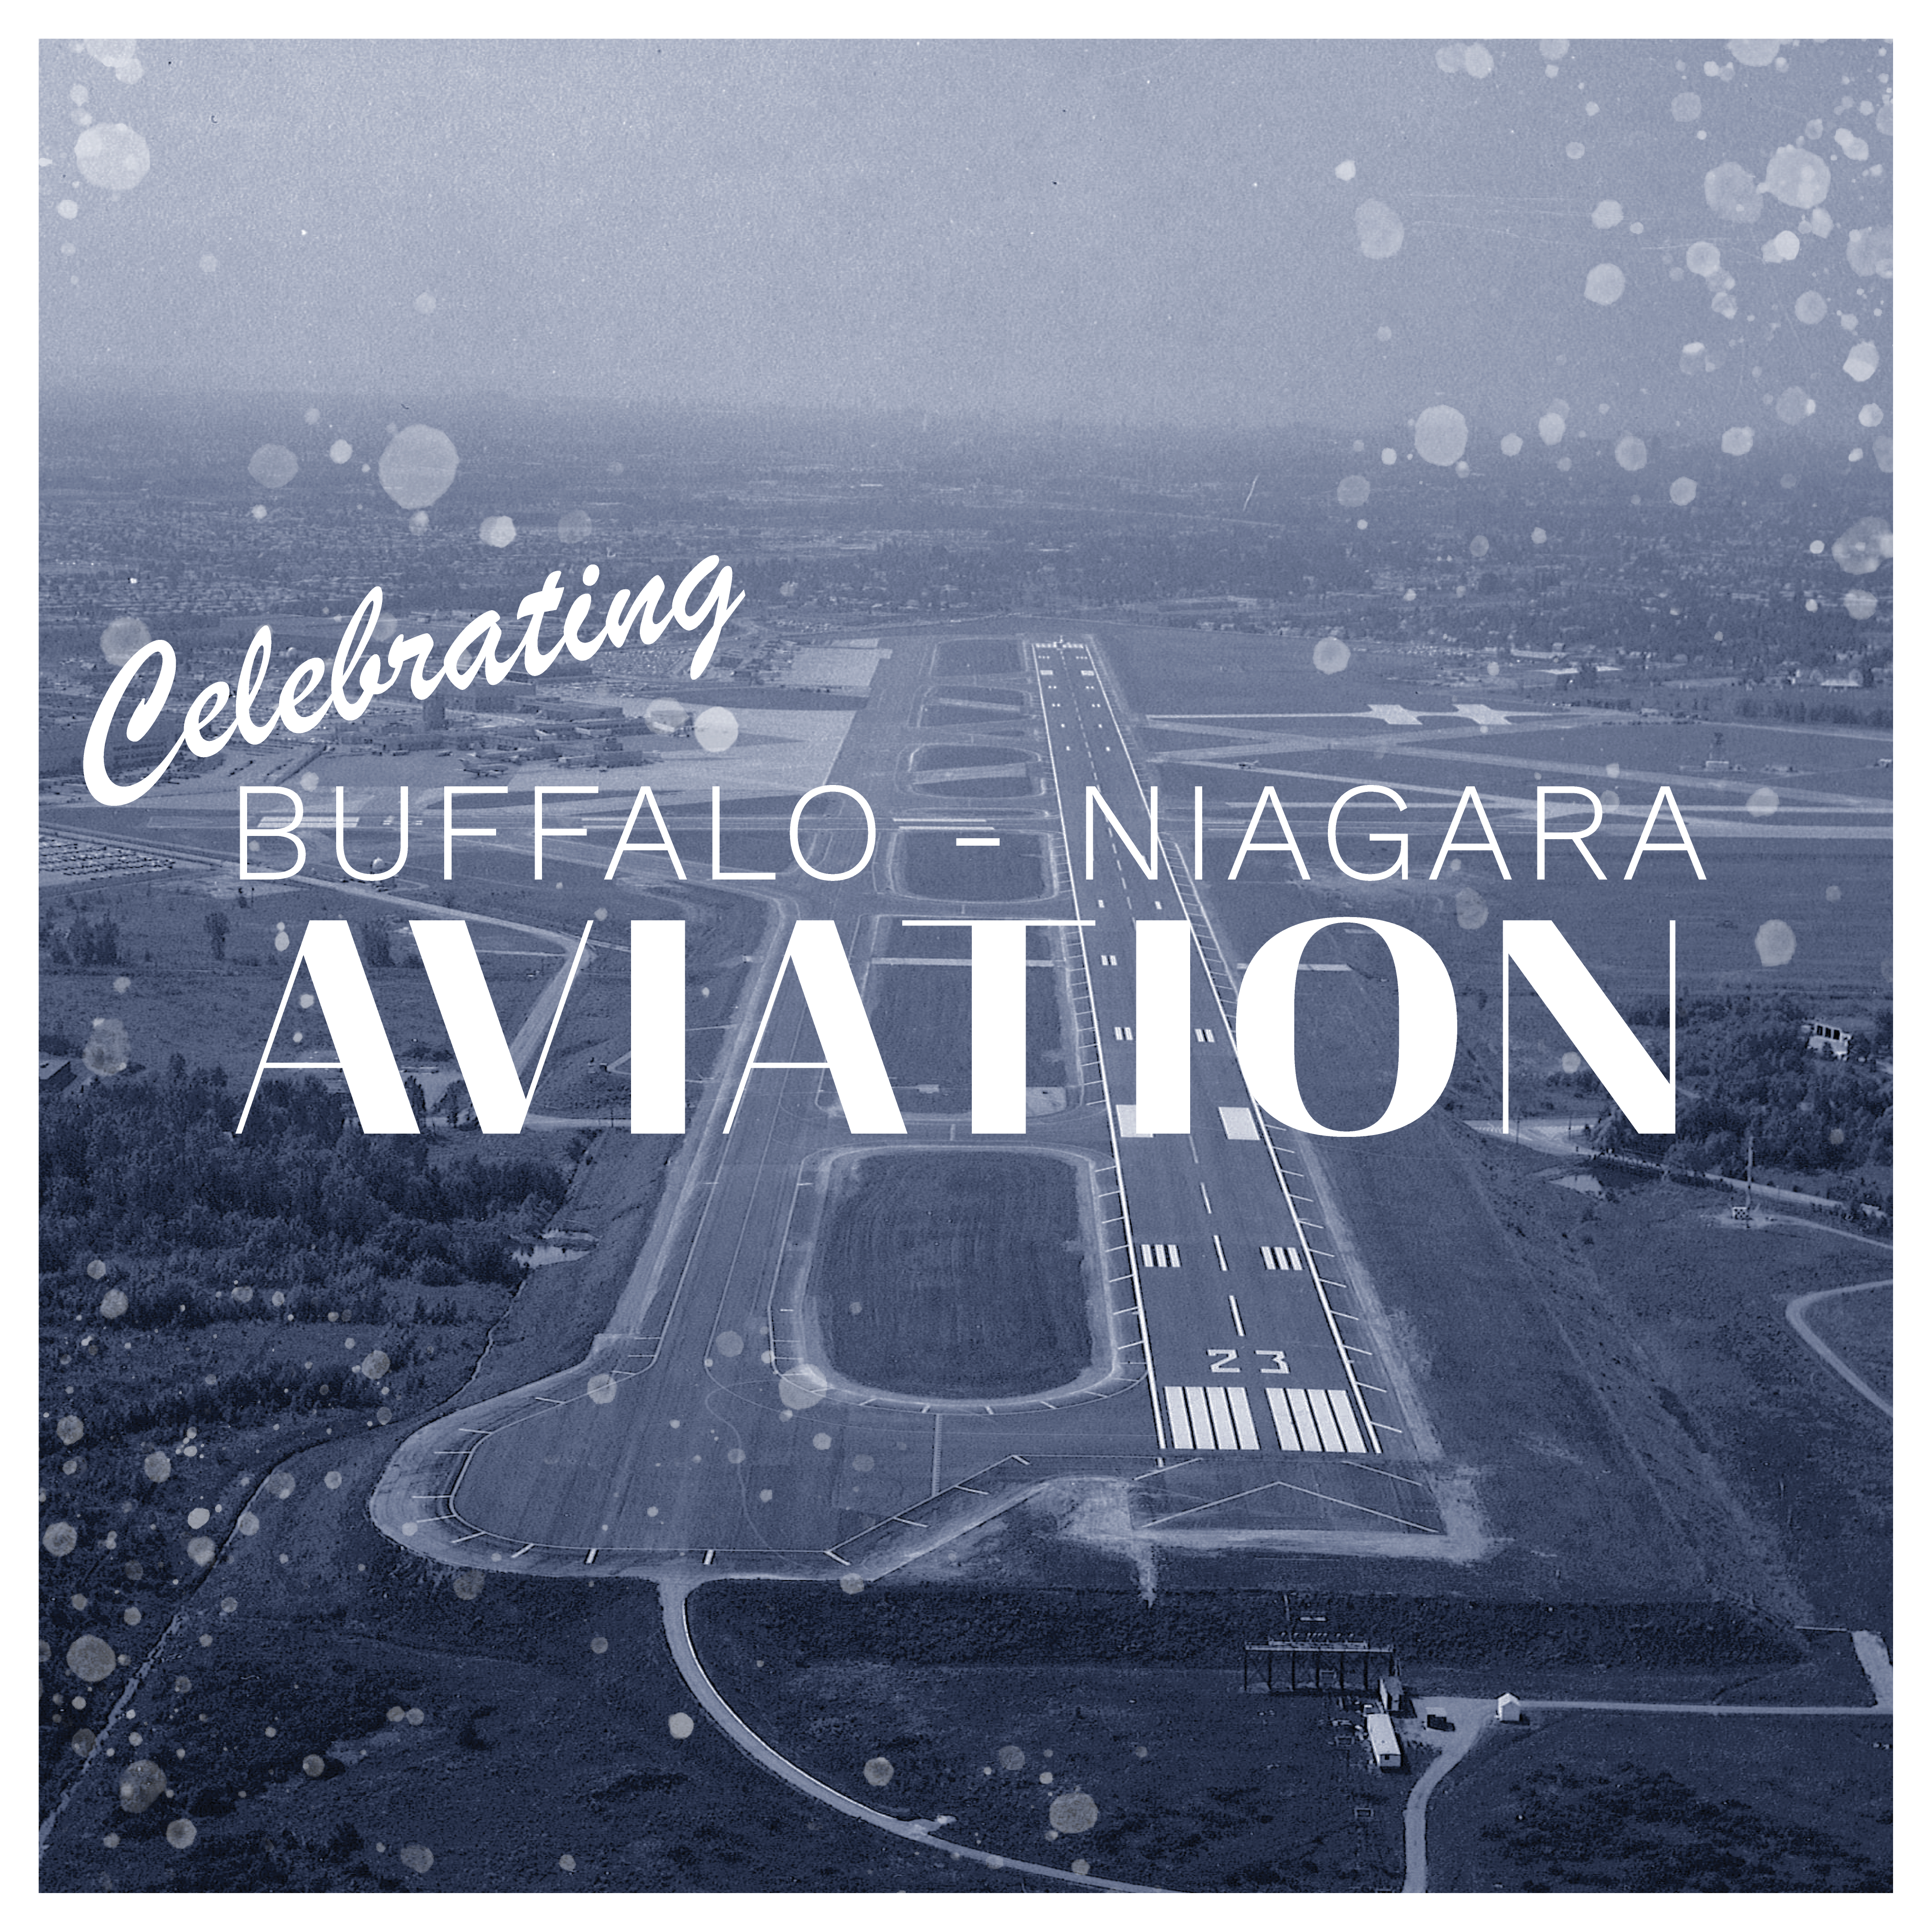 Buffalo-Niagara Aviation History